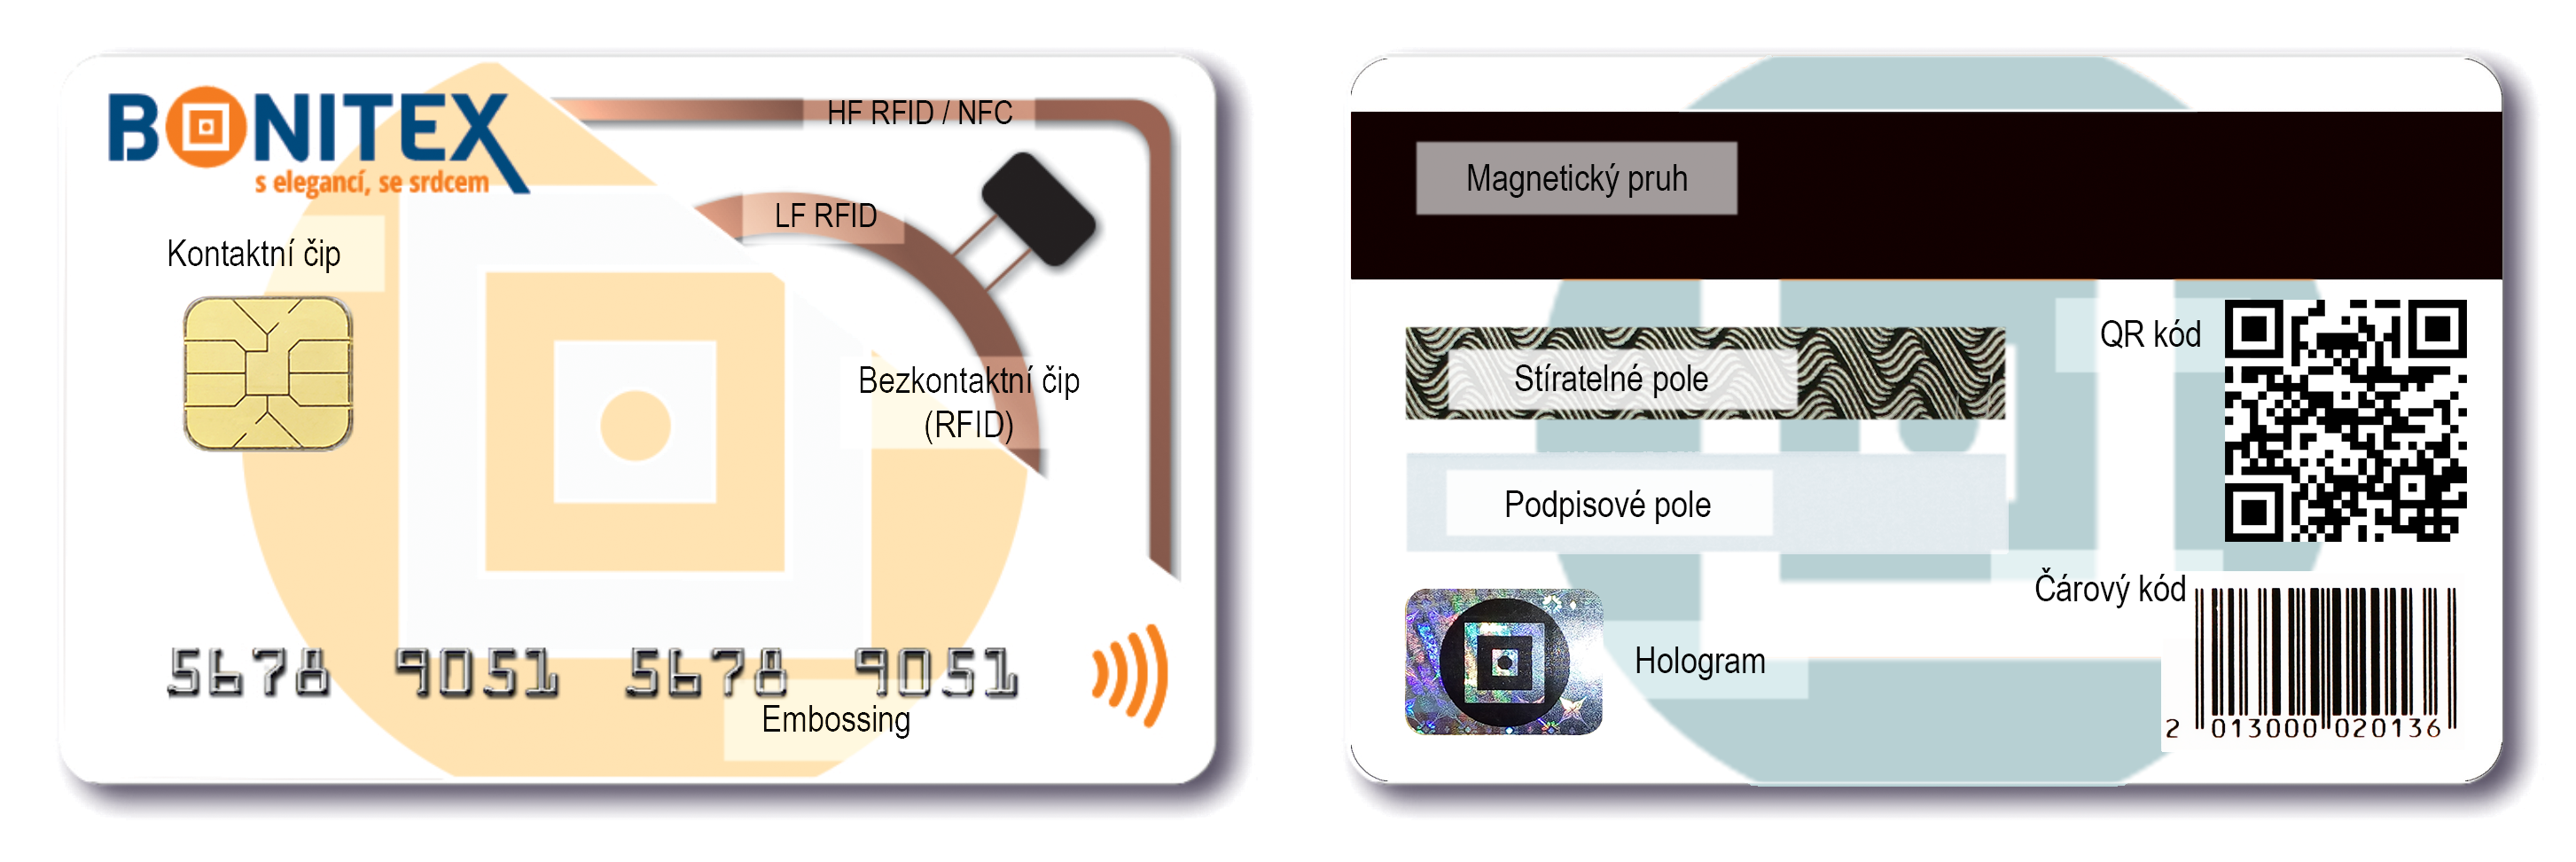 Vyrobíme karty s kontaktním čipem, RFID nebo NFC čipem, Embossingem, Stíratelným a podpisovým polem, QR nebo EAN kódem nebo s Magnetickým pruhem.